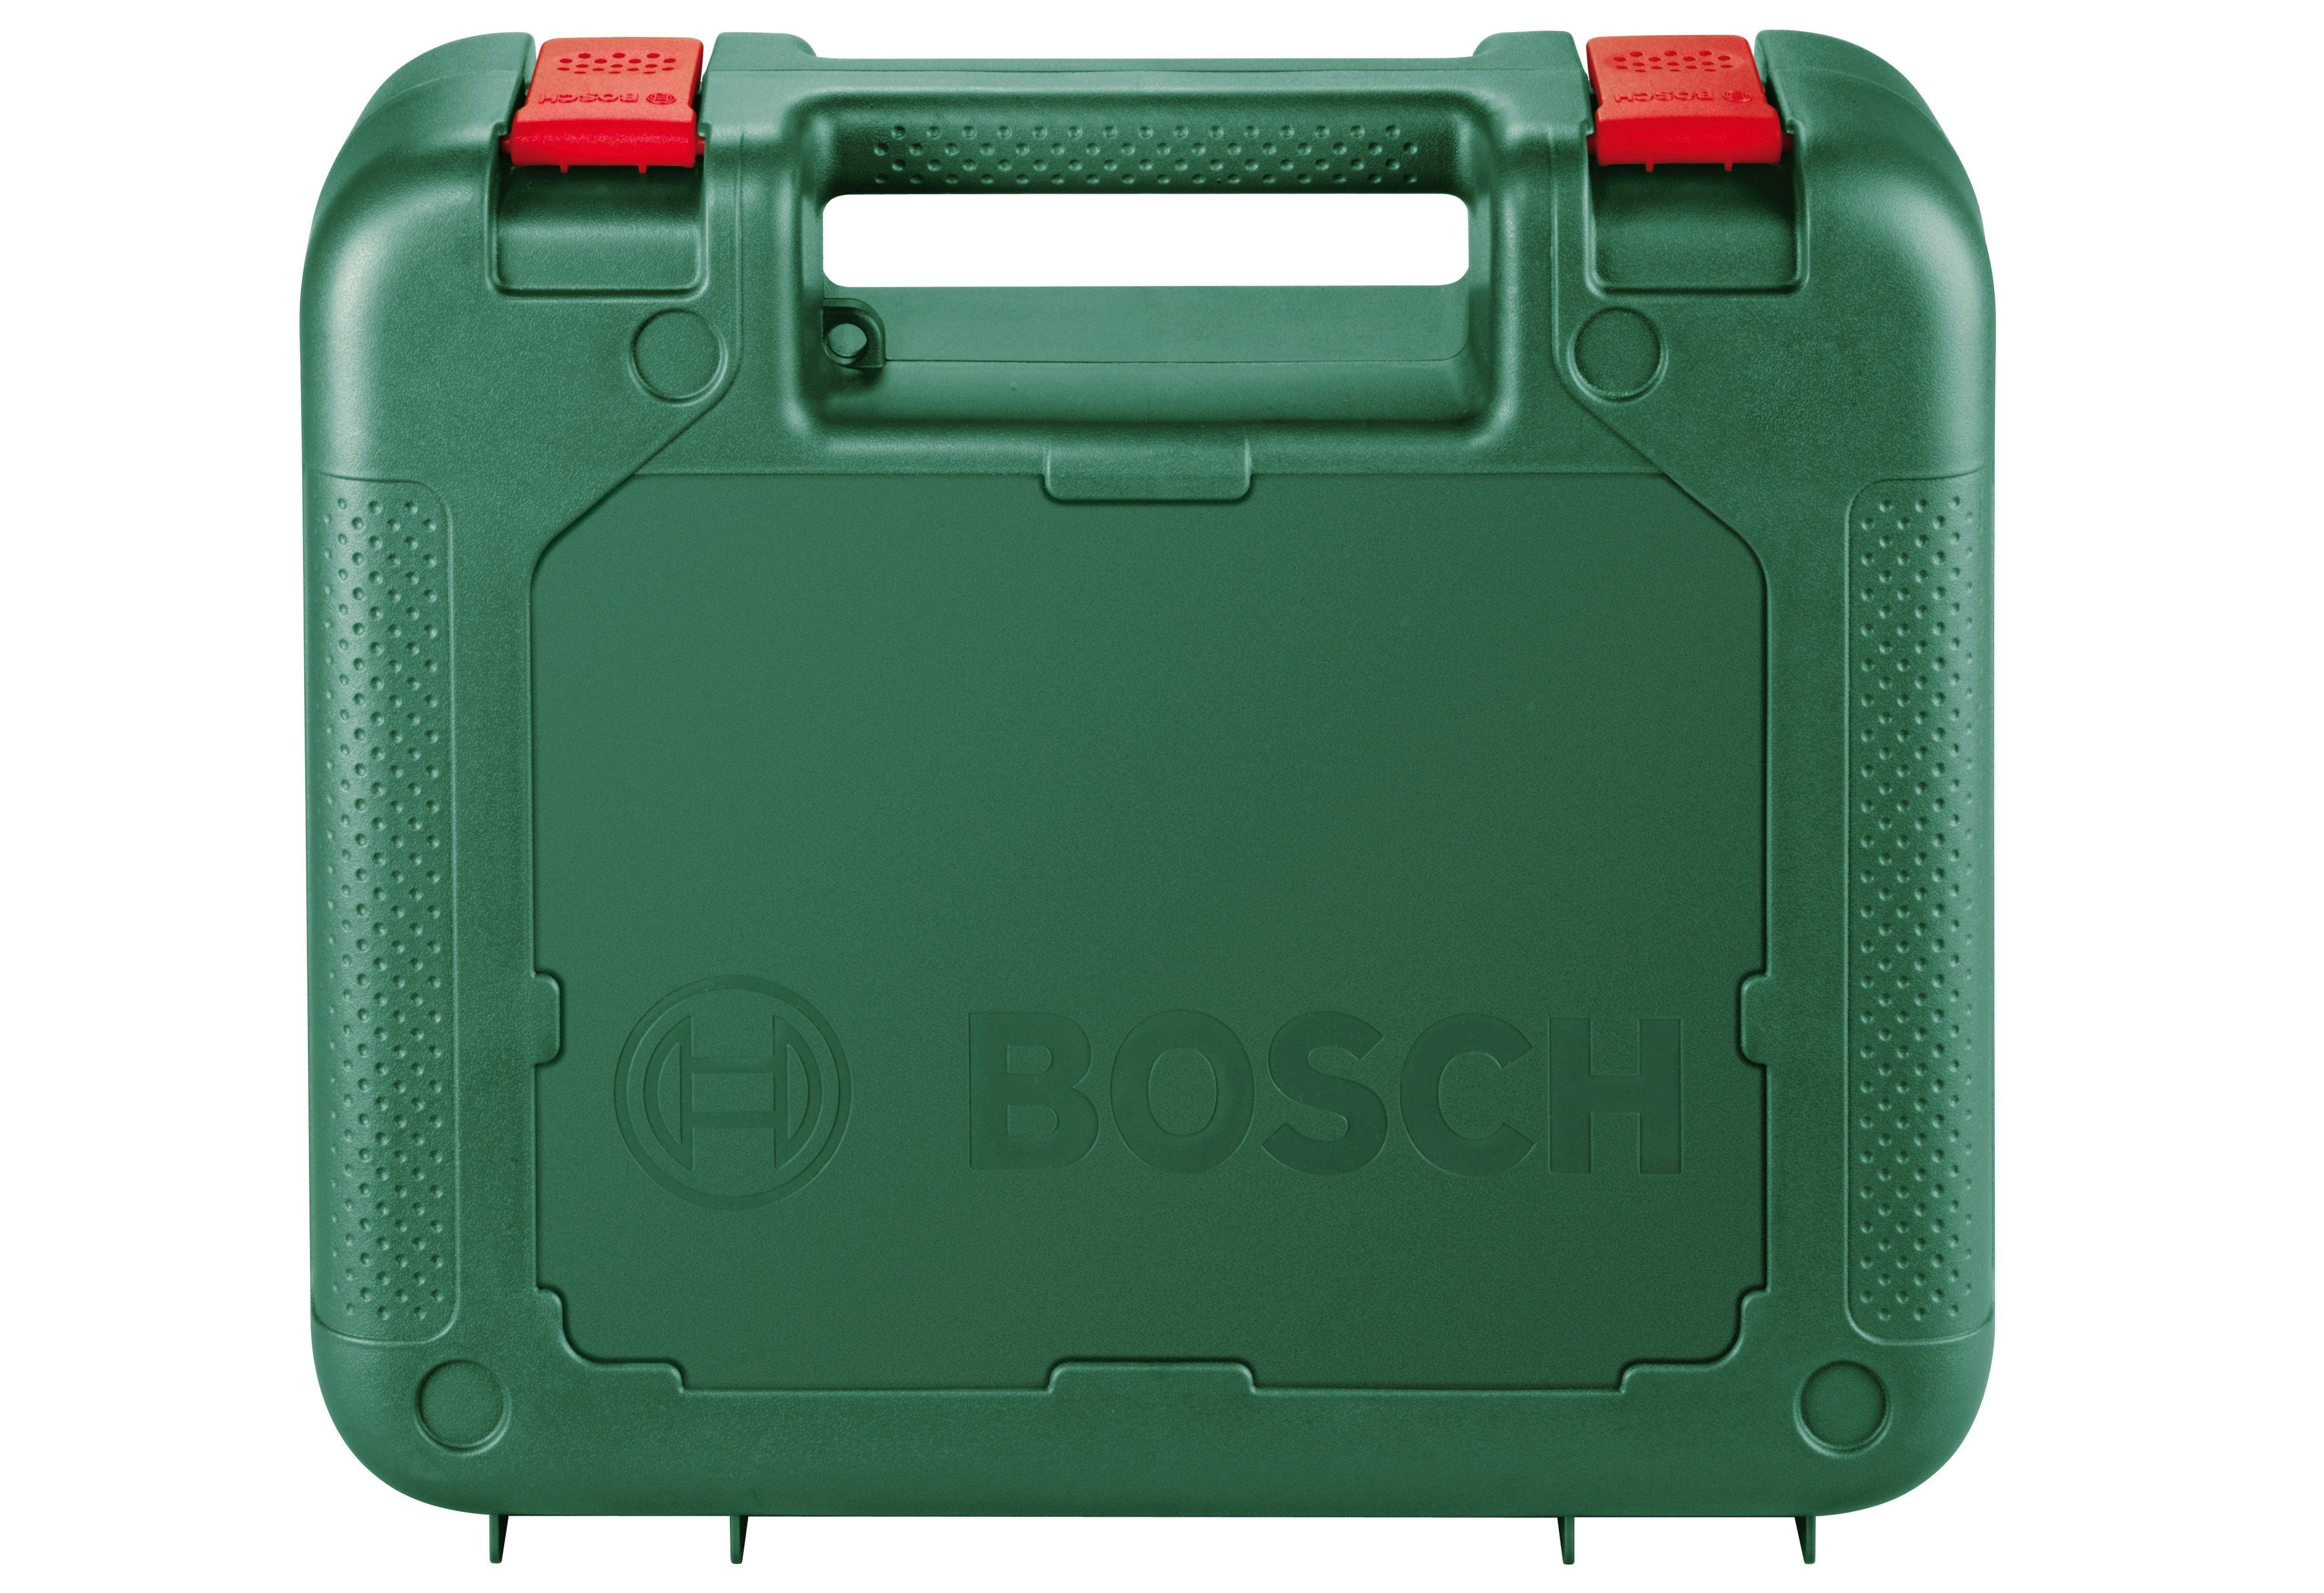 Bosch Stichsäge Home 650 1000 W PEL, & PST Garden